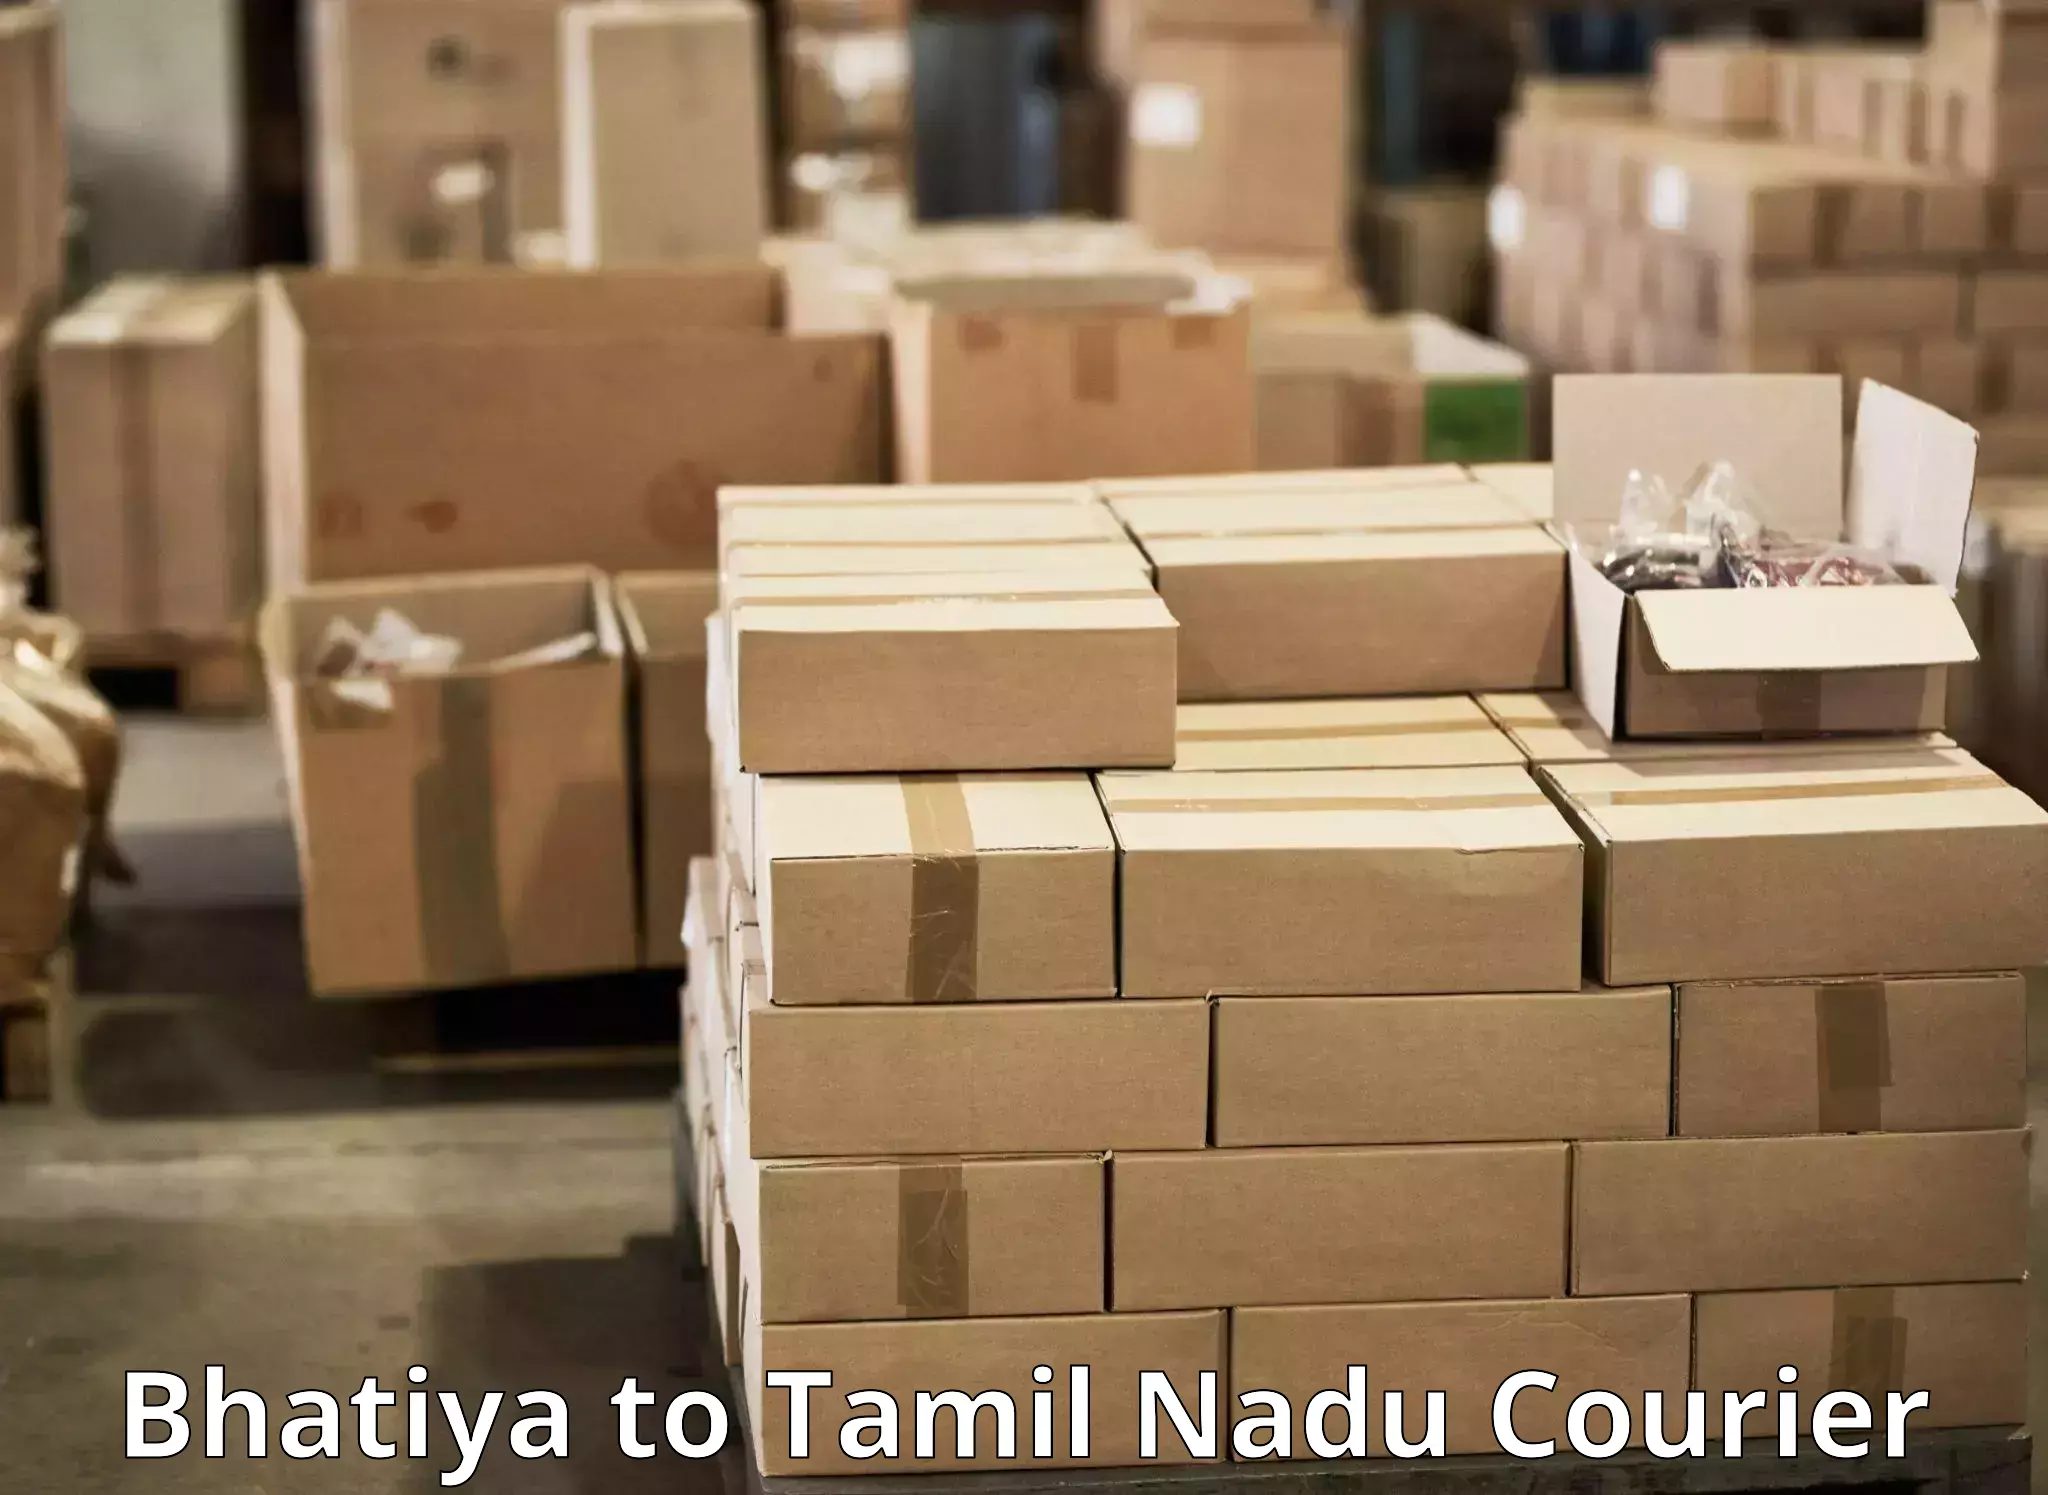 Expedited parcel delivery in Bhatiya to Tamil Nadu